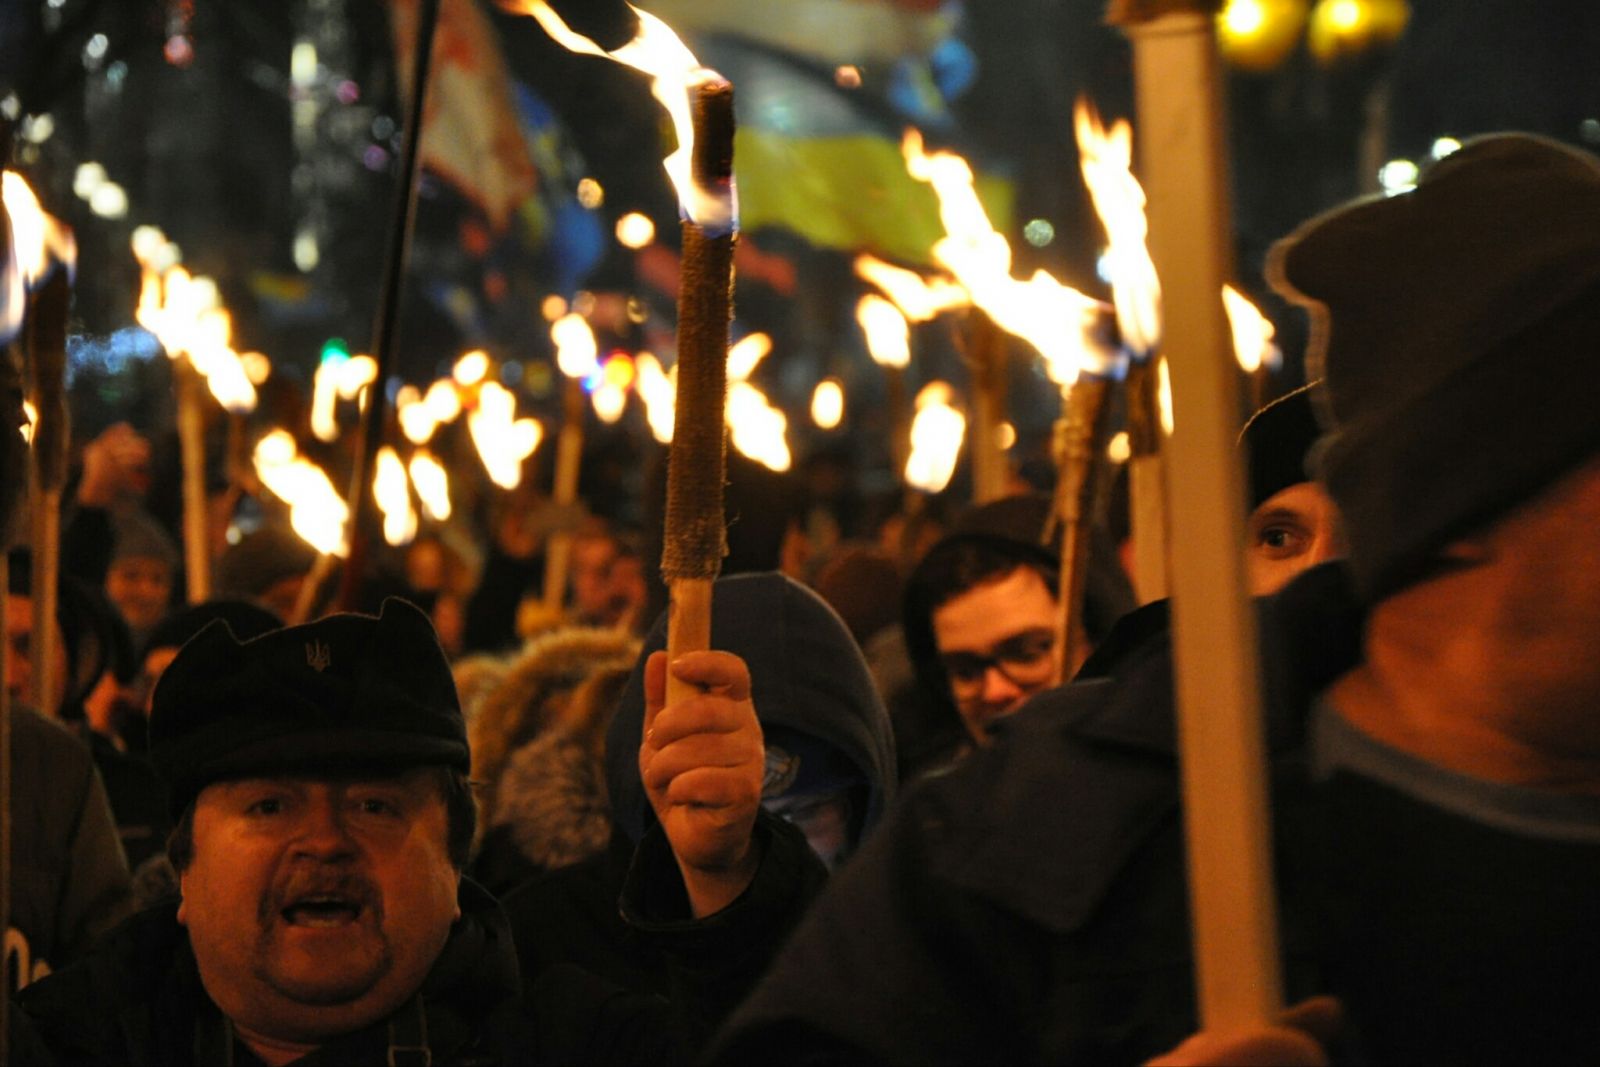 В Киеве прошел марш националистов